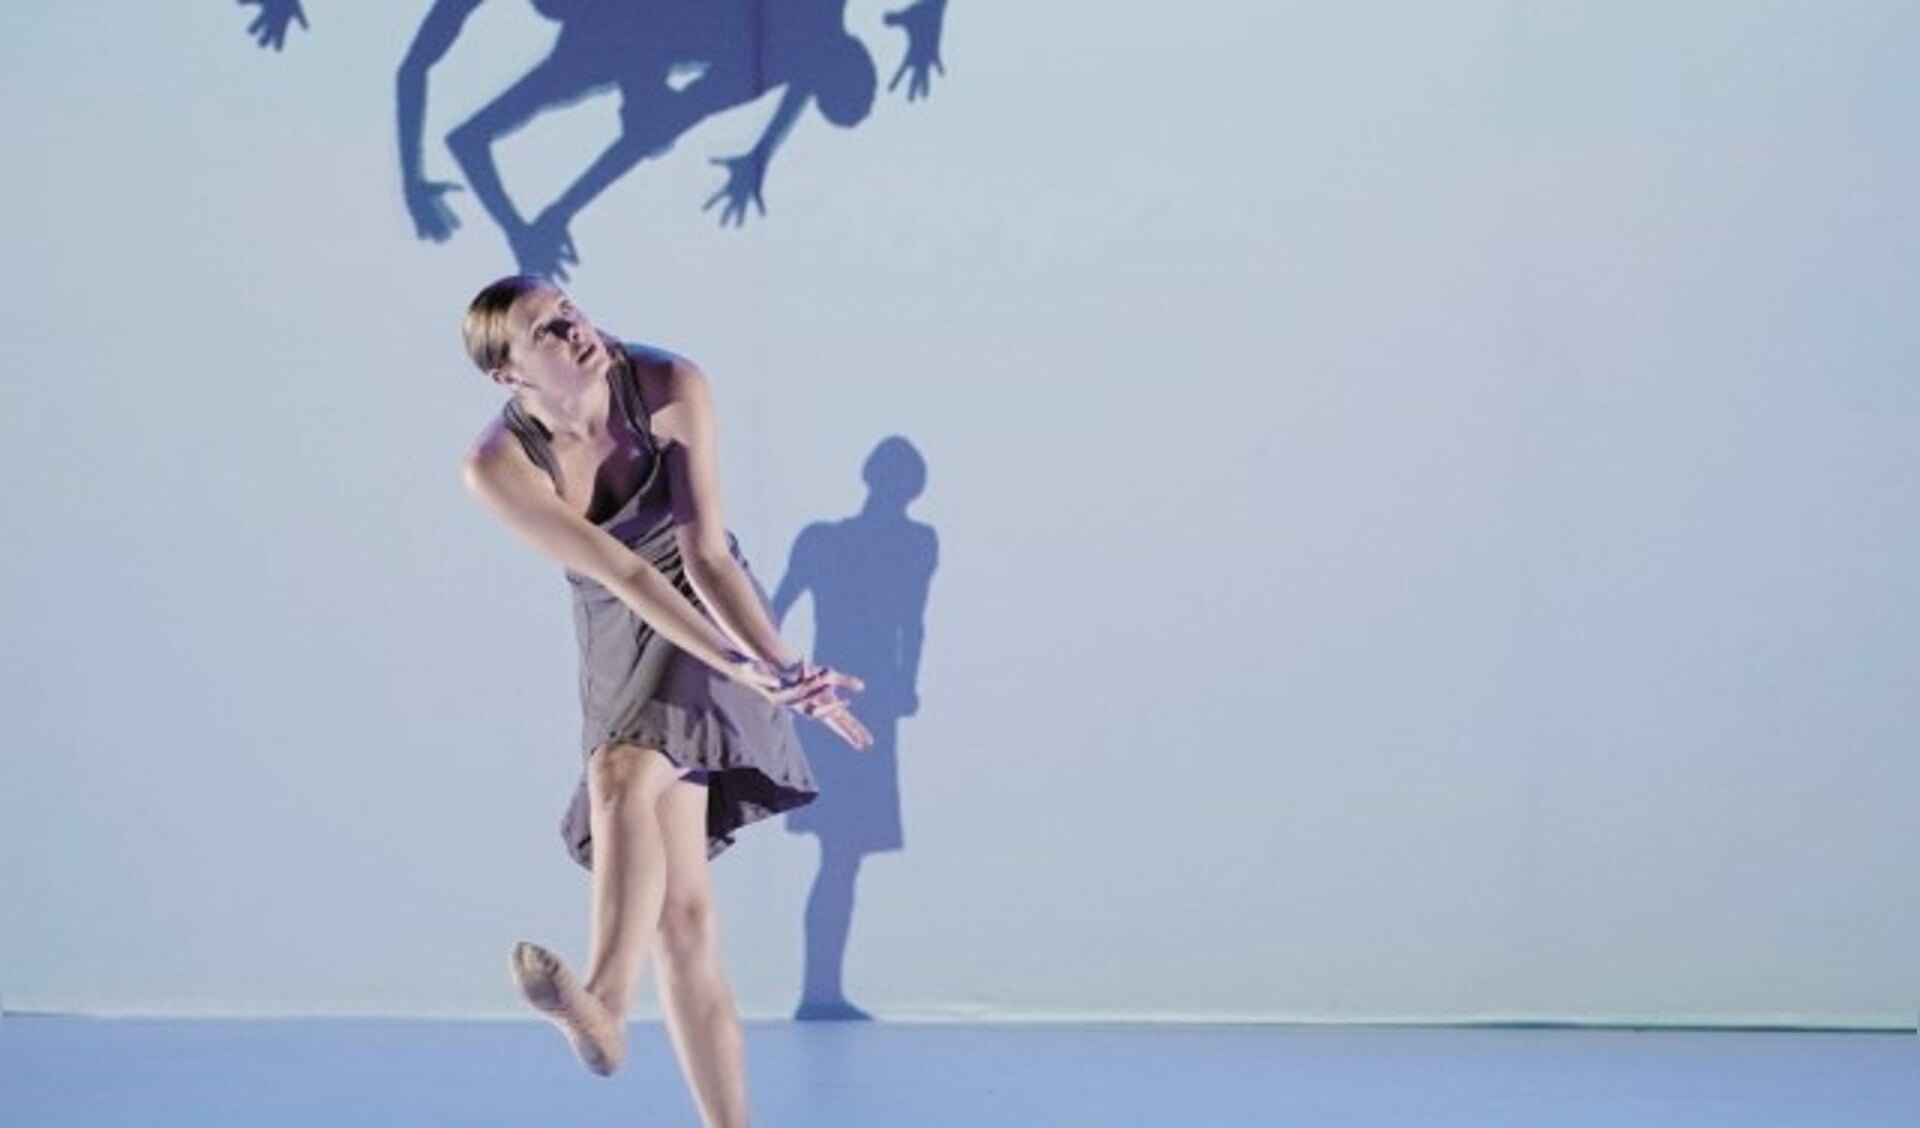 Van klassiek-romantisch ballet tot futuristisch samenspel met drones, in het nieuwe seizoen is er wat dans betreft van alles te beleven.